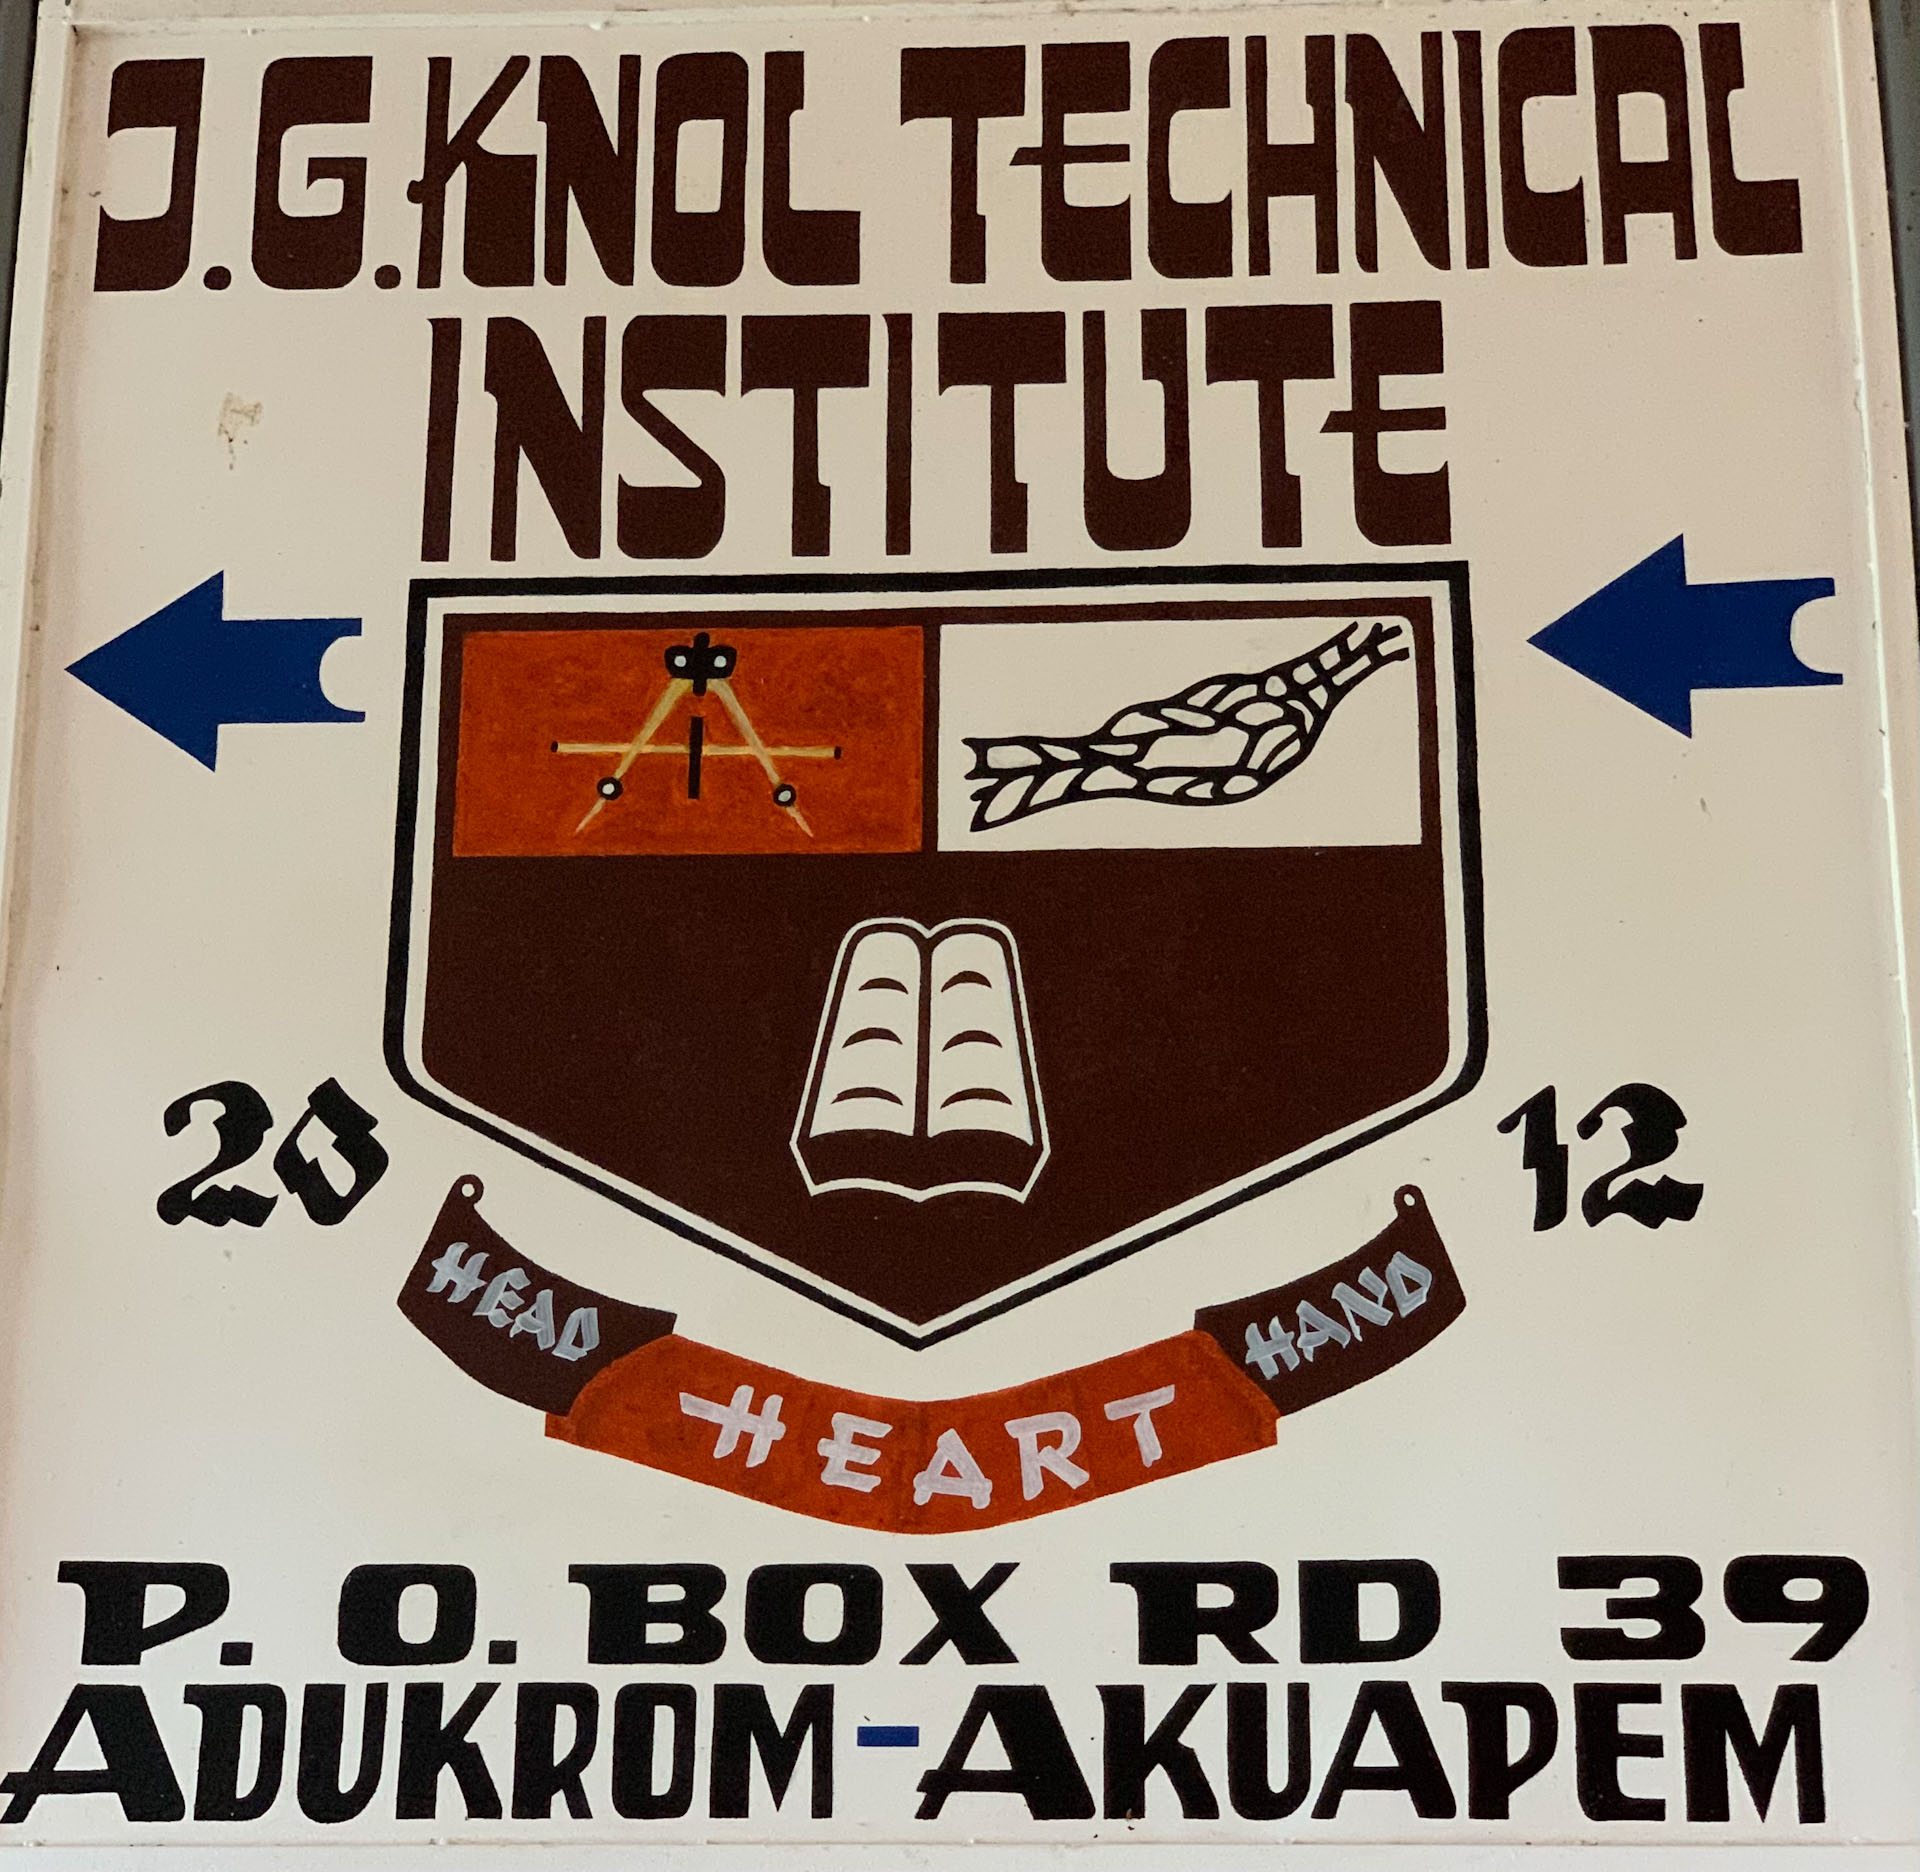 J G Knol Technical Instititute